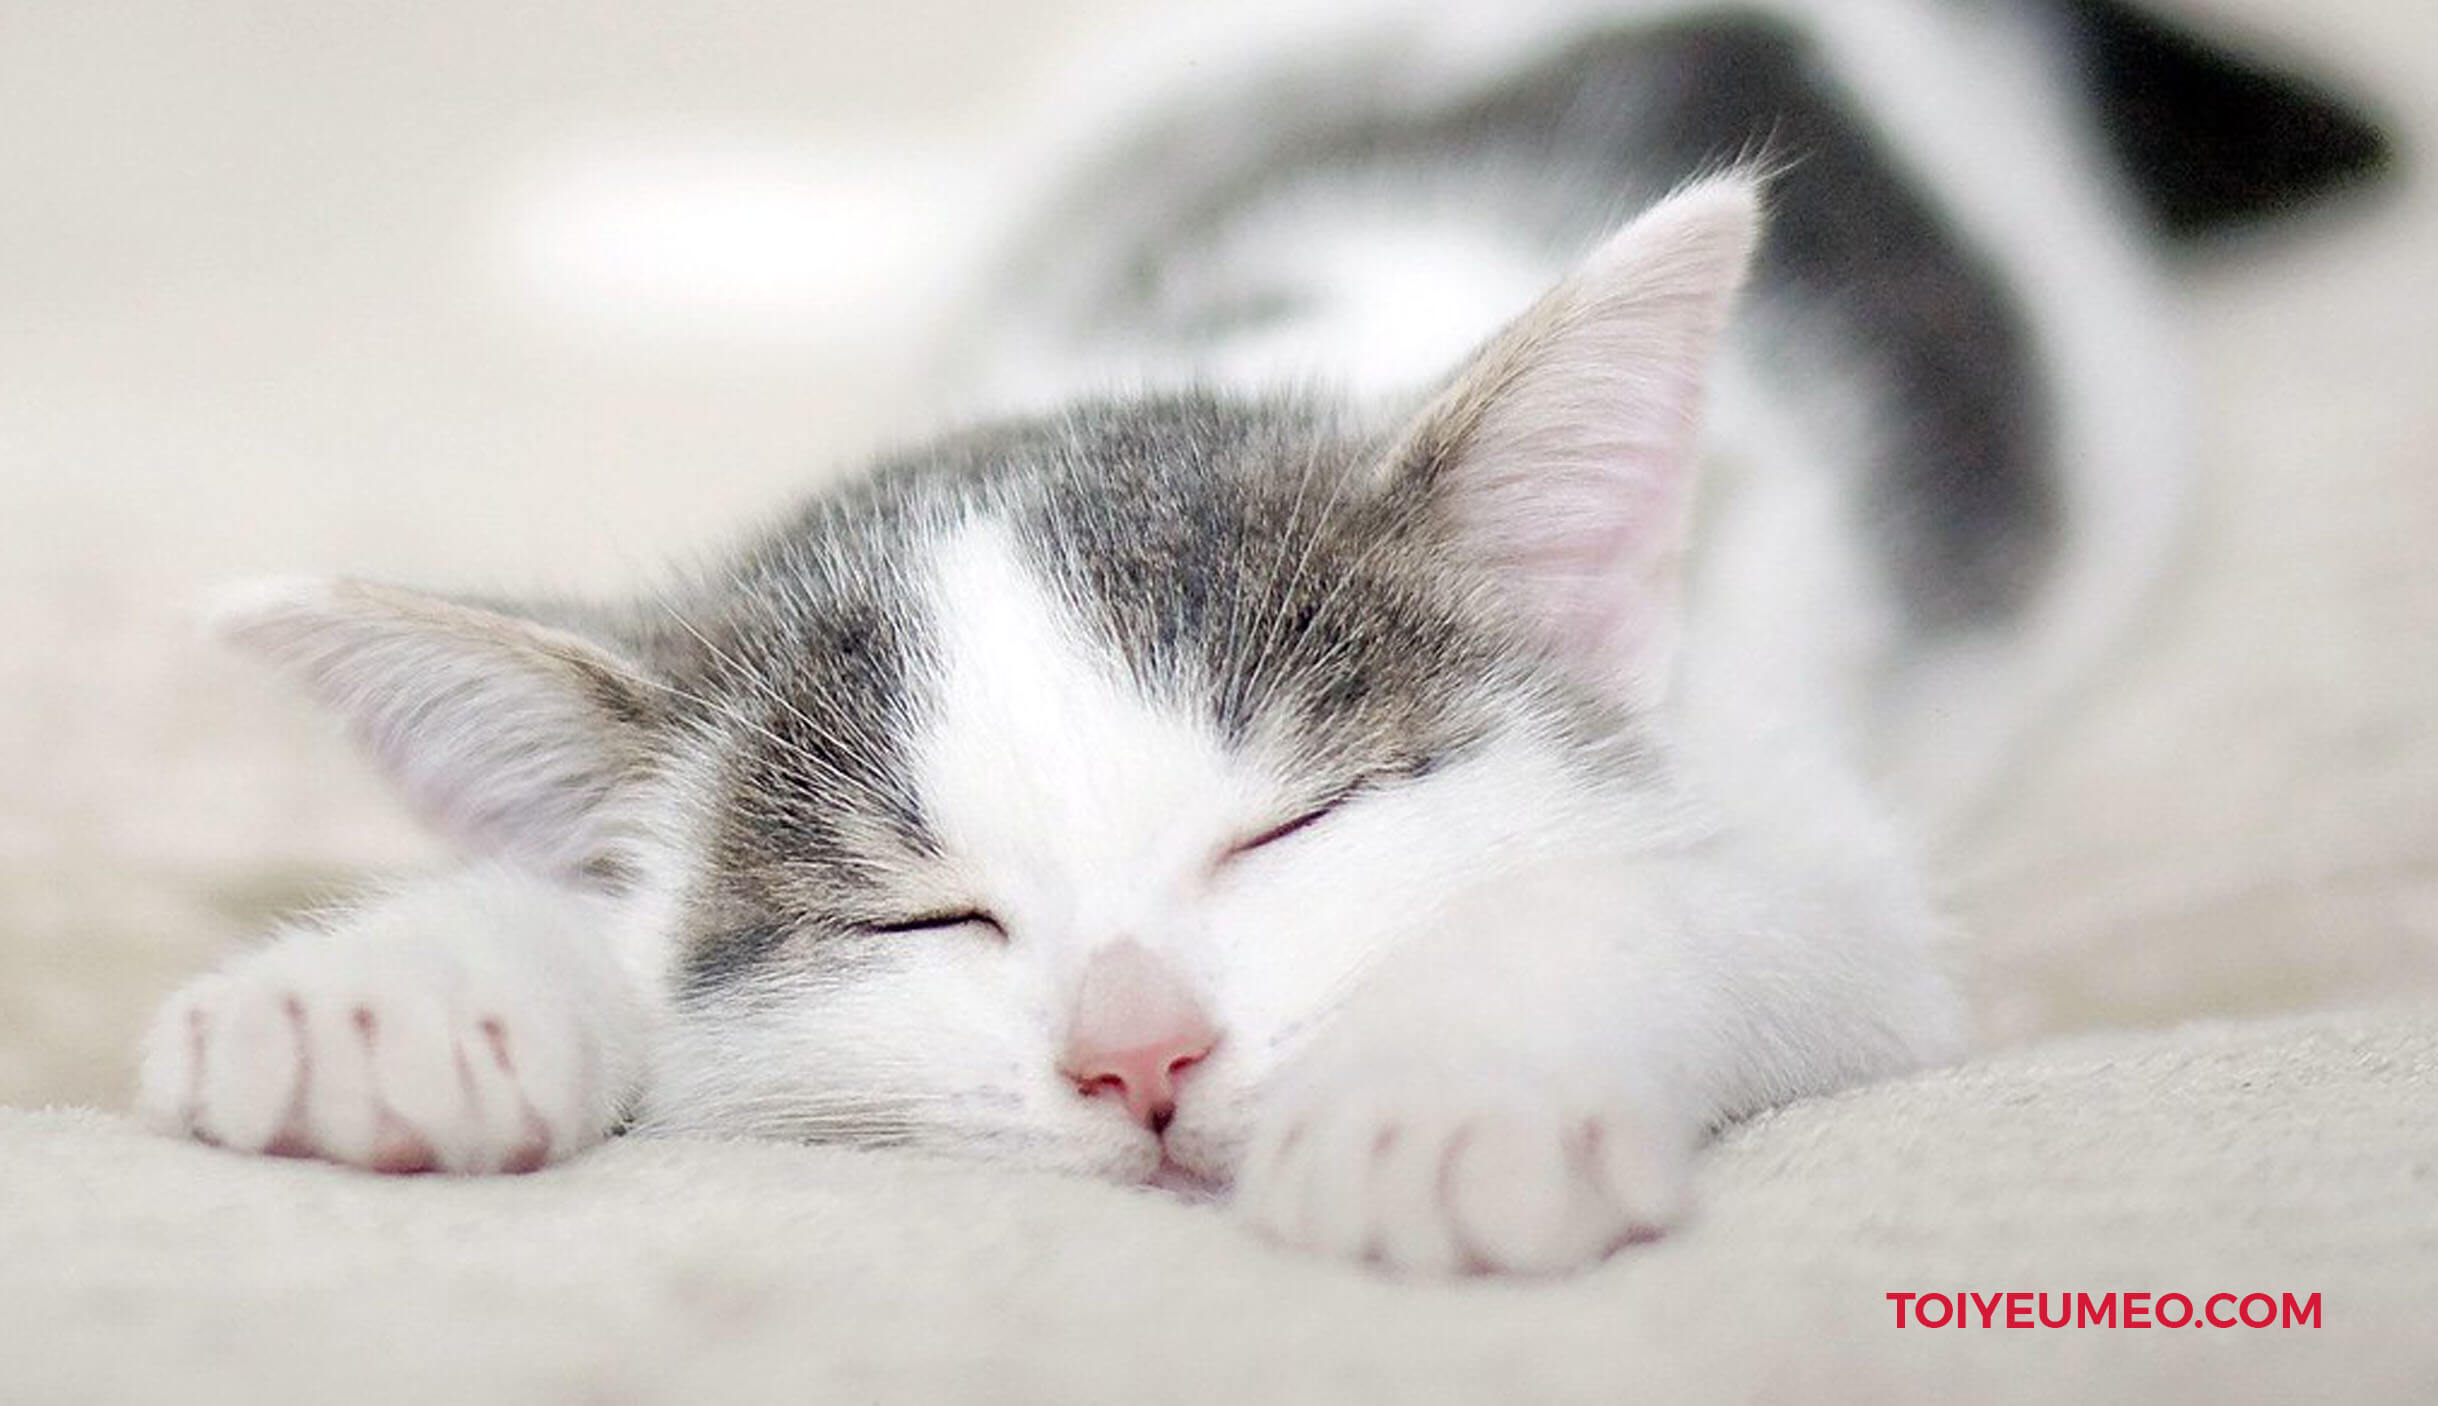 Nếu nơi mèo nghỉ ngơi có gió lùa liên tục, việc hạ thân nhiệt cũng góp phần làm tai mèo bị lạnh